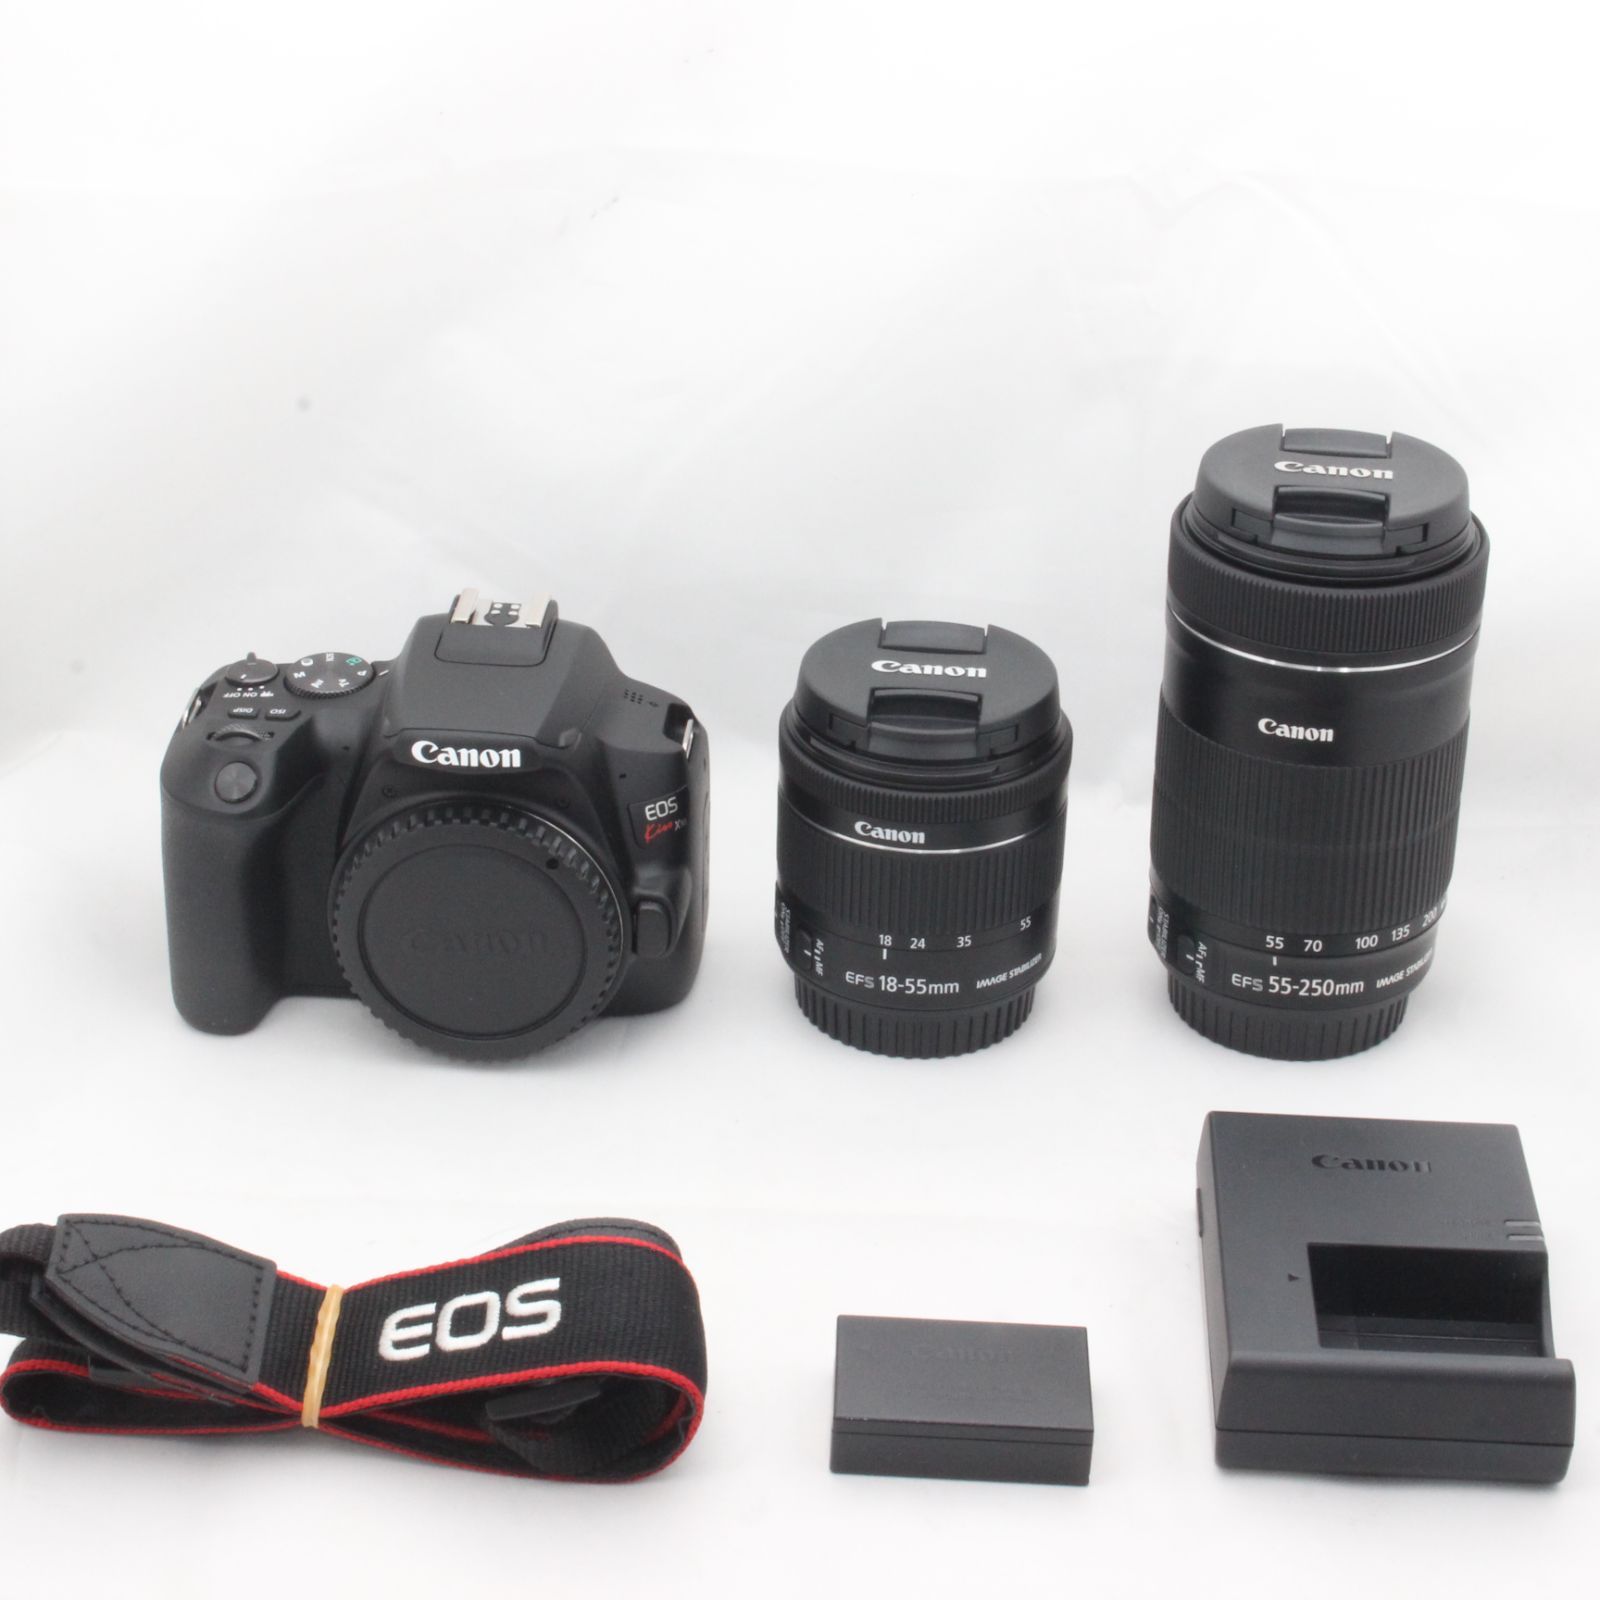 Canon デジタル一眼レフカメラ EOS Kiss X50 ダブルズームキット EF-S18-55ｍｍ EF-S55-250ｍｍ付属 ブラック KI - 2